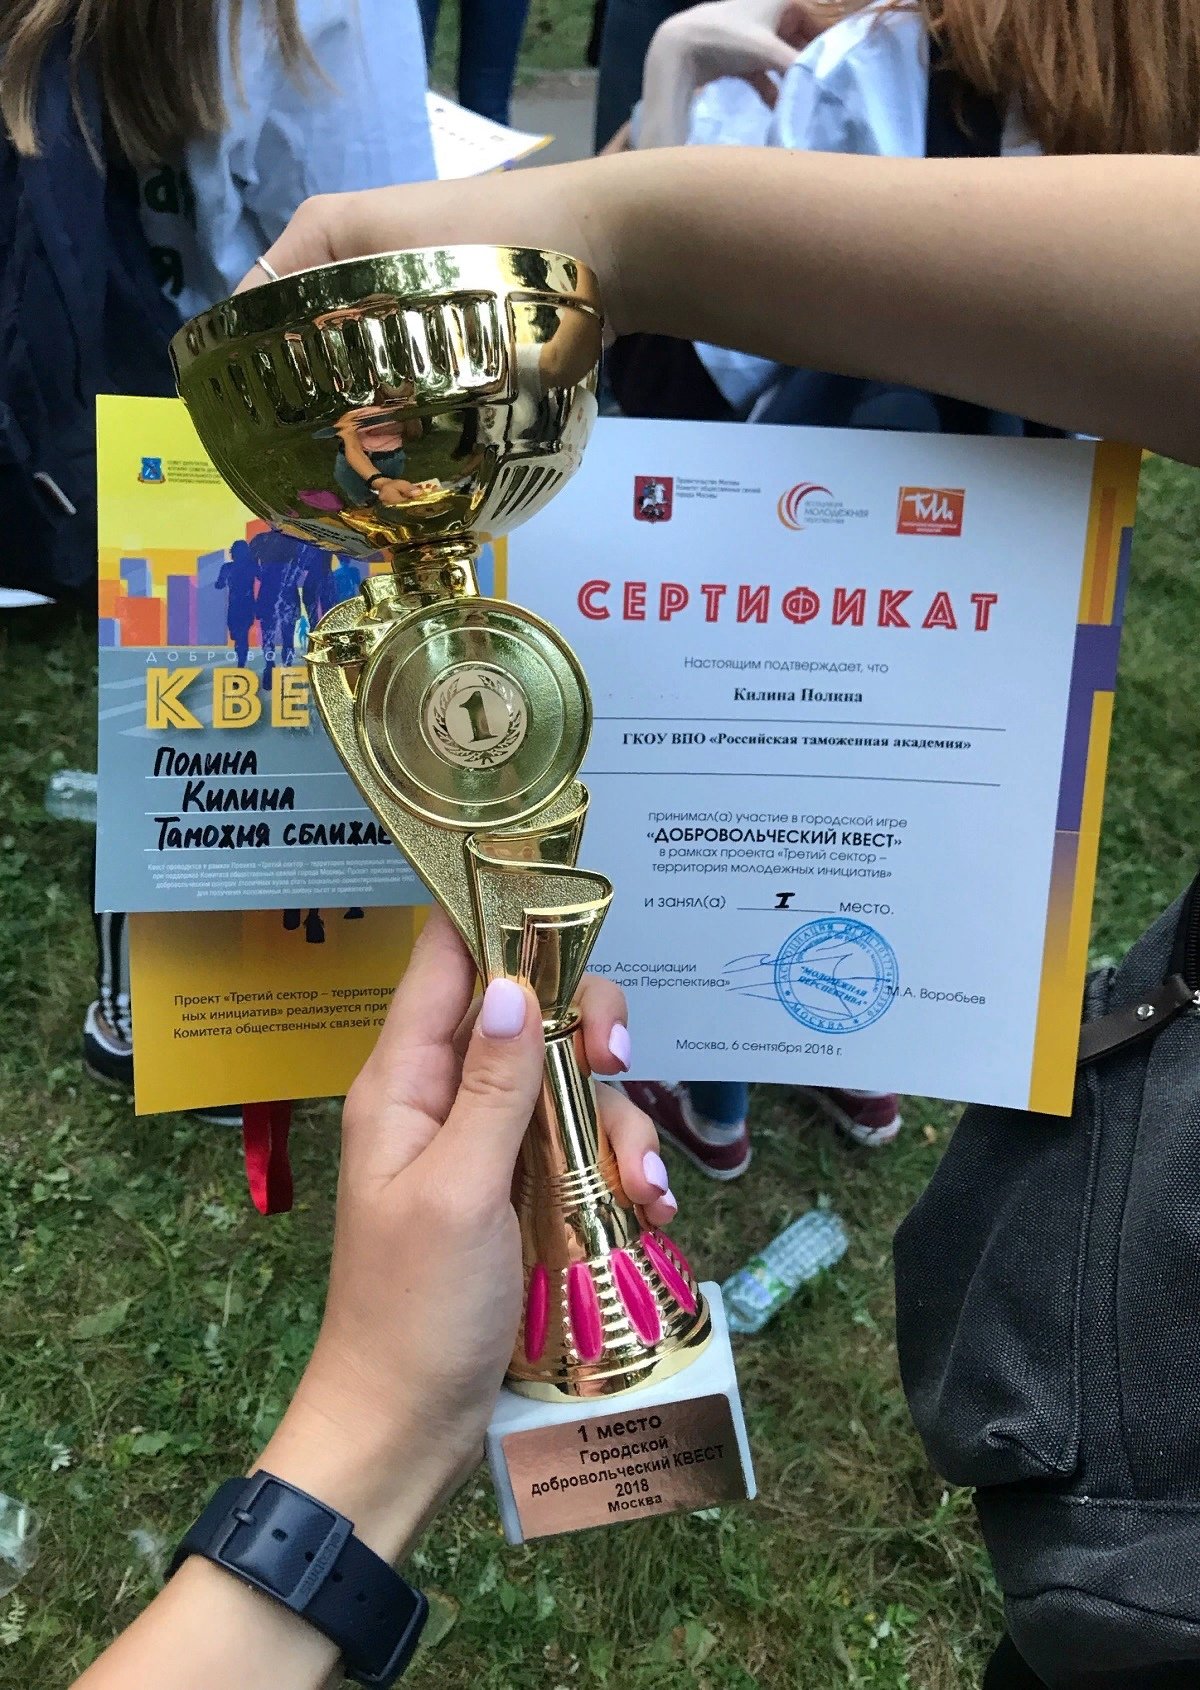 📌 6 сентября 2018 г. в столичном районе Тропарево-Никулино состоялась командная игра «Добровольческий квест».